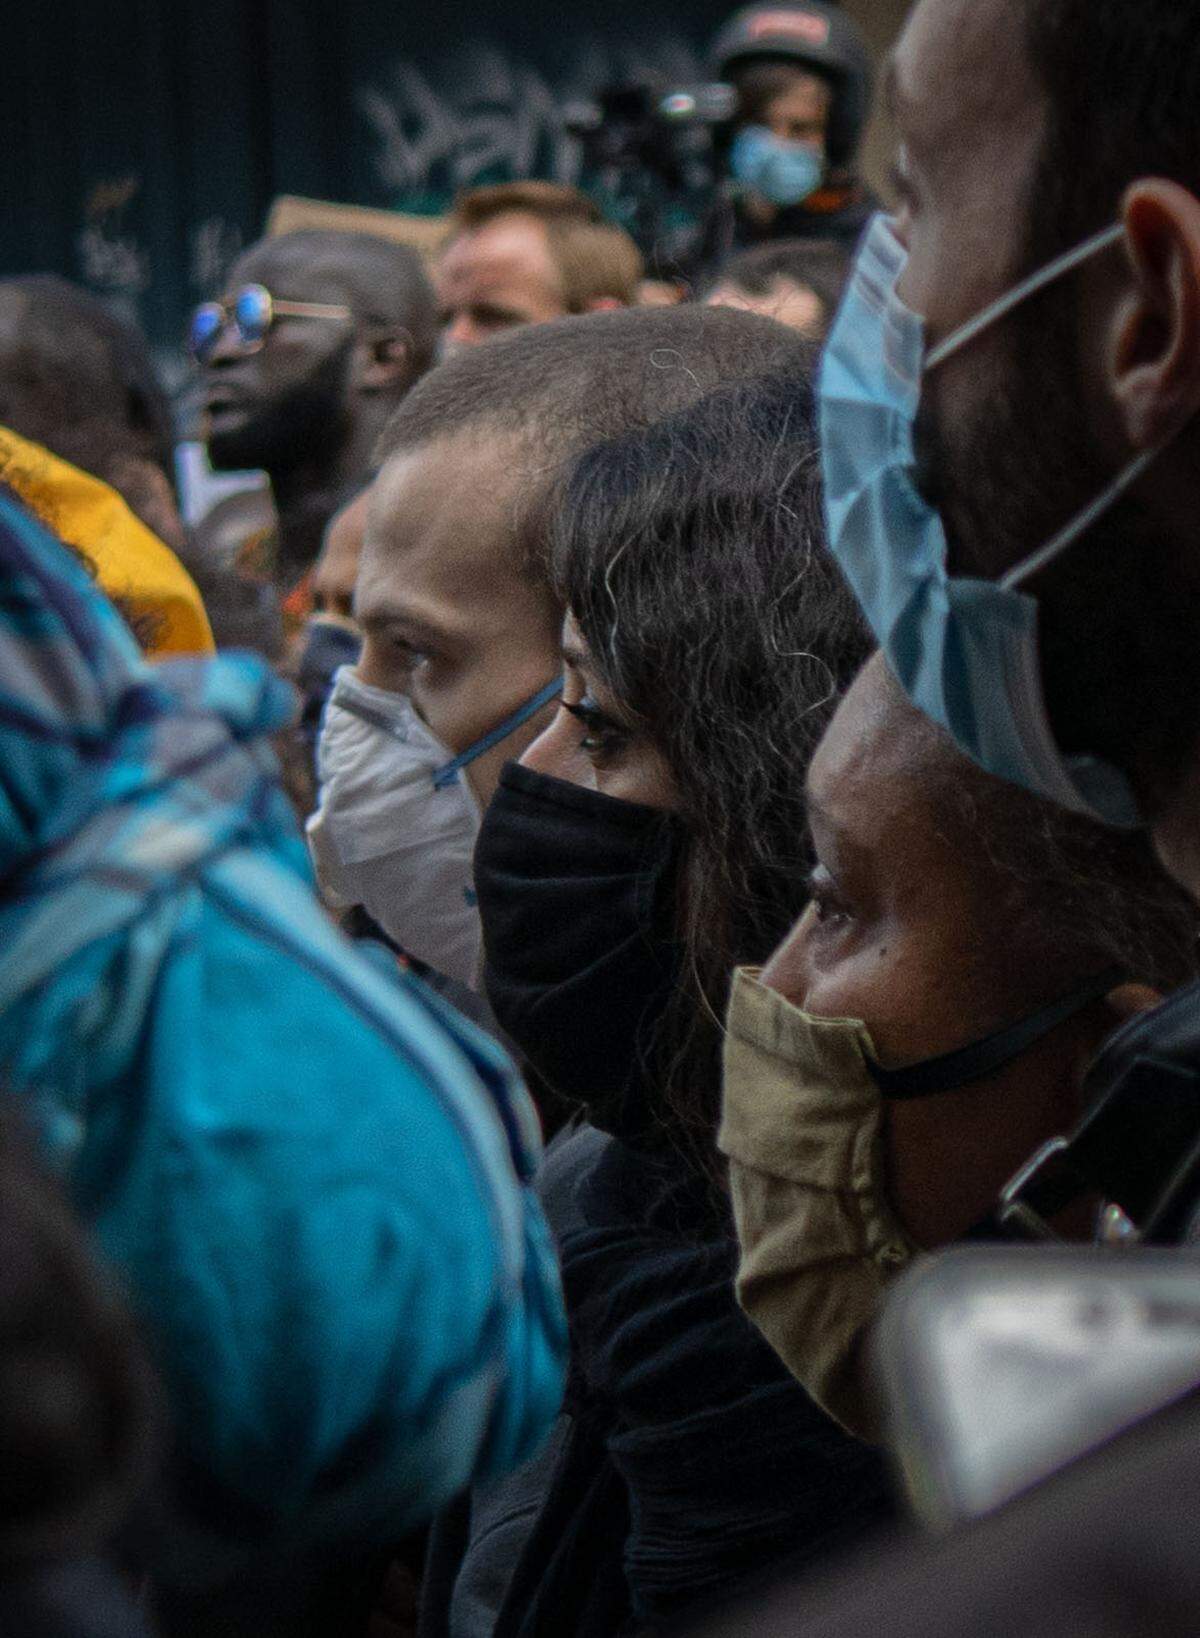 Proteste gab es in zahlreichen Städten, hier etwa in Paris. Neben der Intention dahinter - der Schöpfer dieses Werks nennt soziale Ungerechtigkeit und Polizeigewalt - gab es ein weiteres Merkmal, dass sie alle einte: den Mundschutz der Teilnehmer.